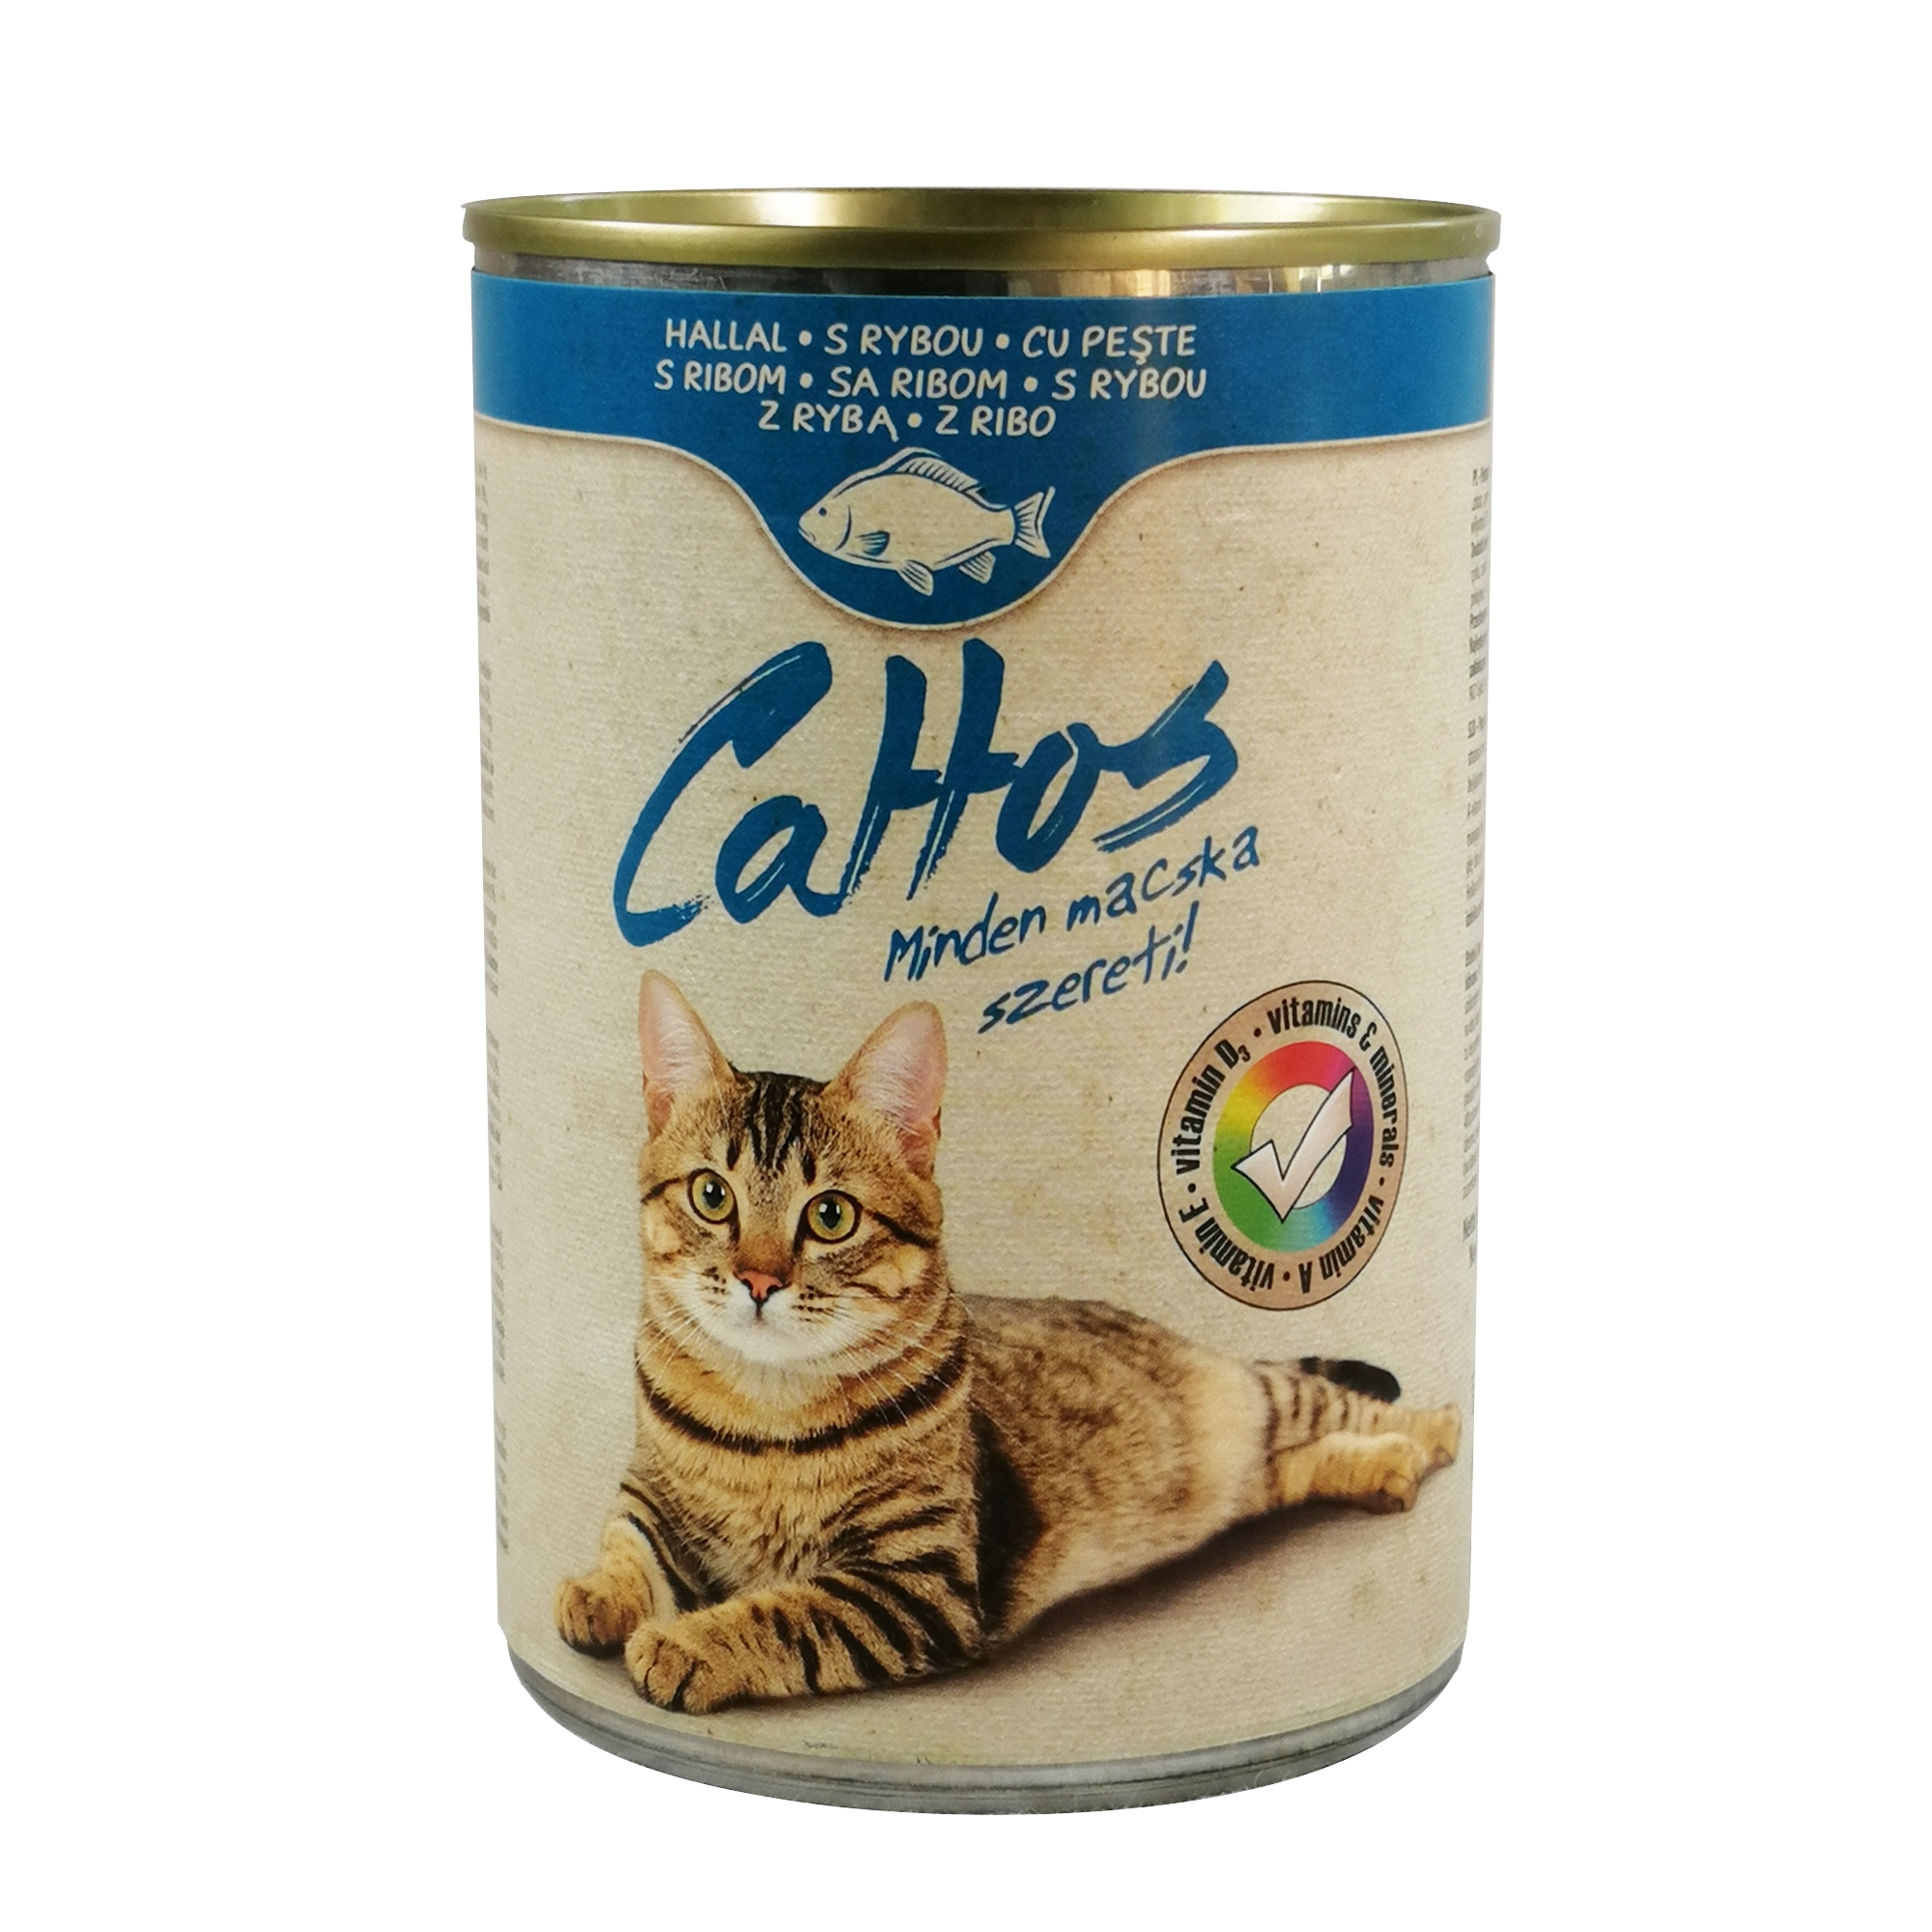 Conserva Cat Cattos 415 g Peste petmart.ro